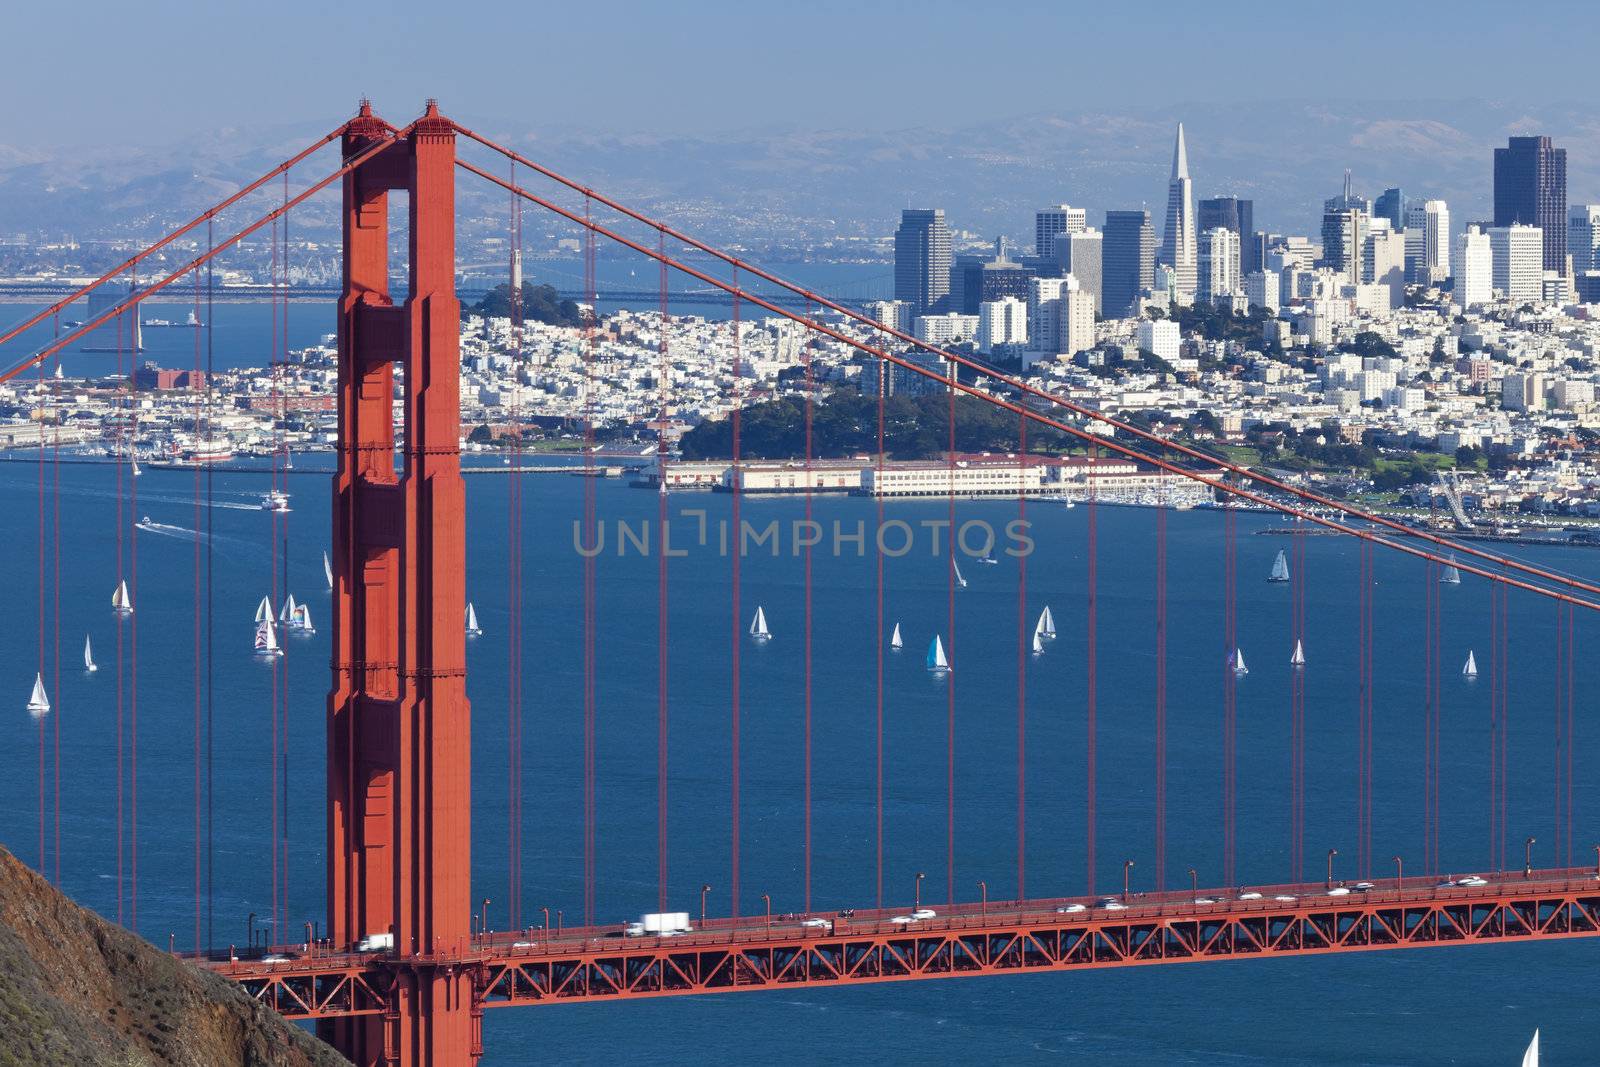 San Francisco Panorama from San Francisco Bay